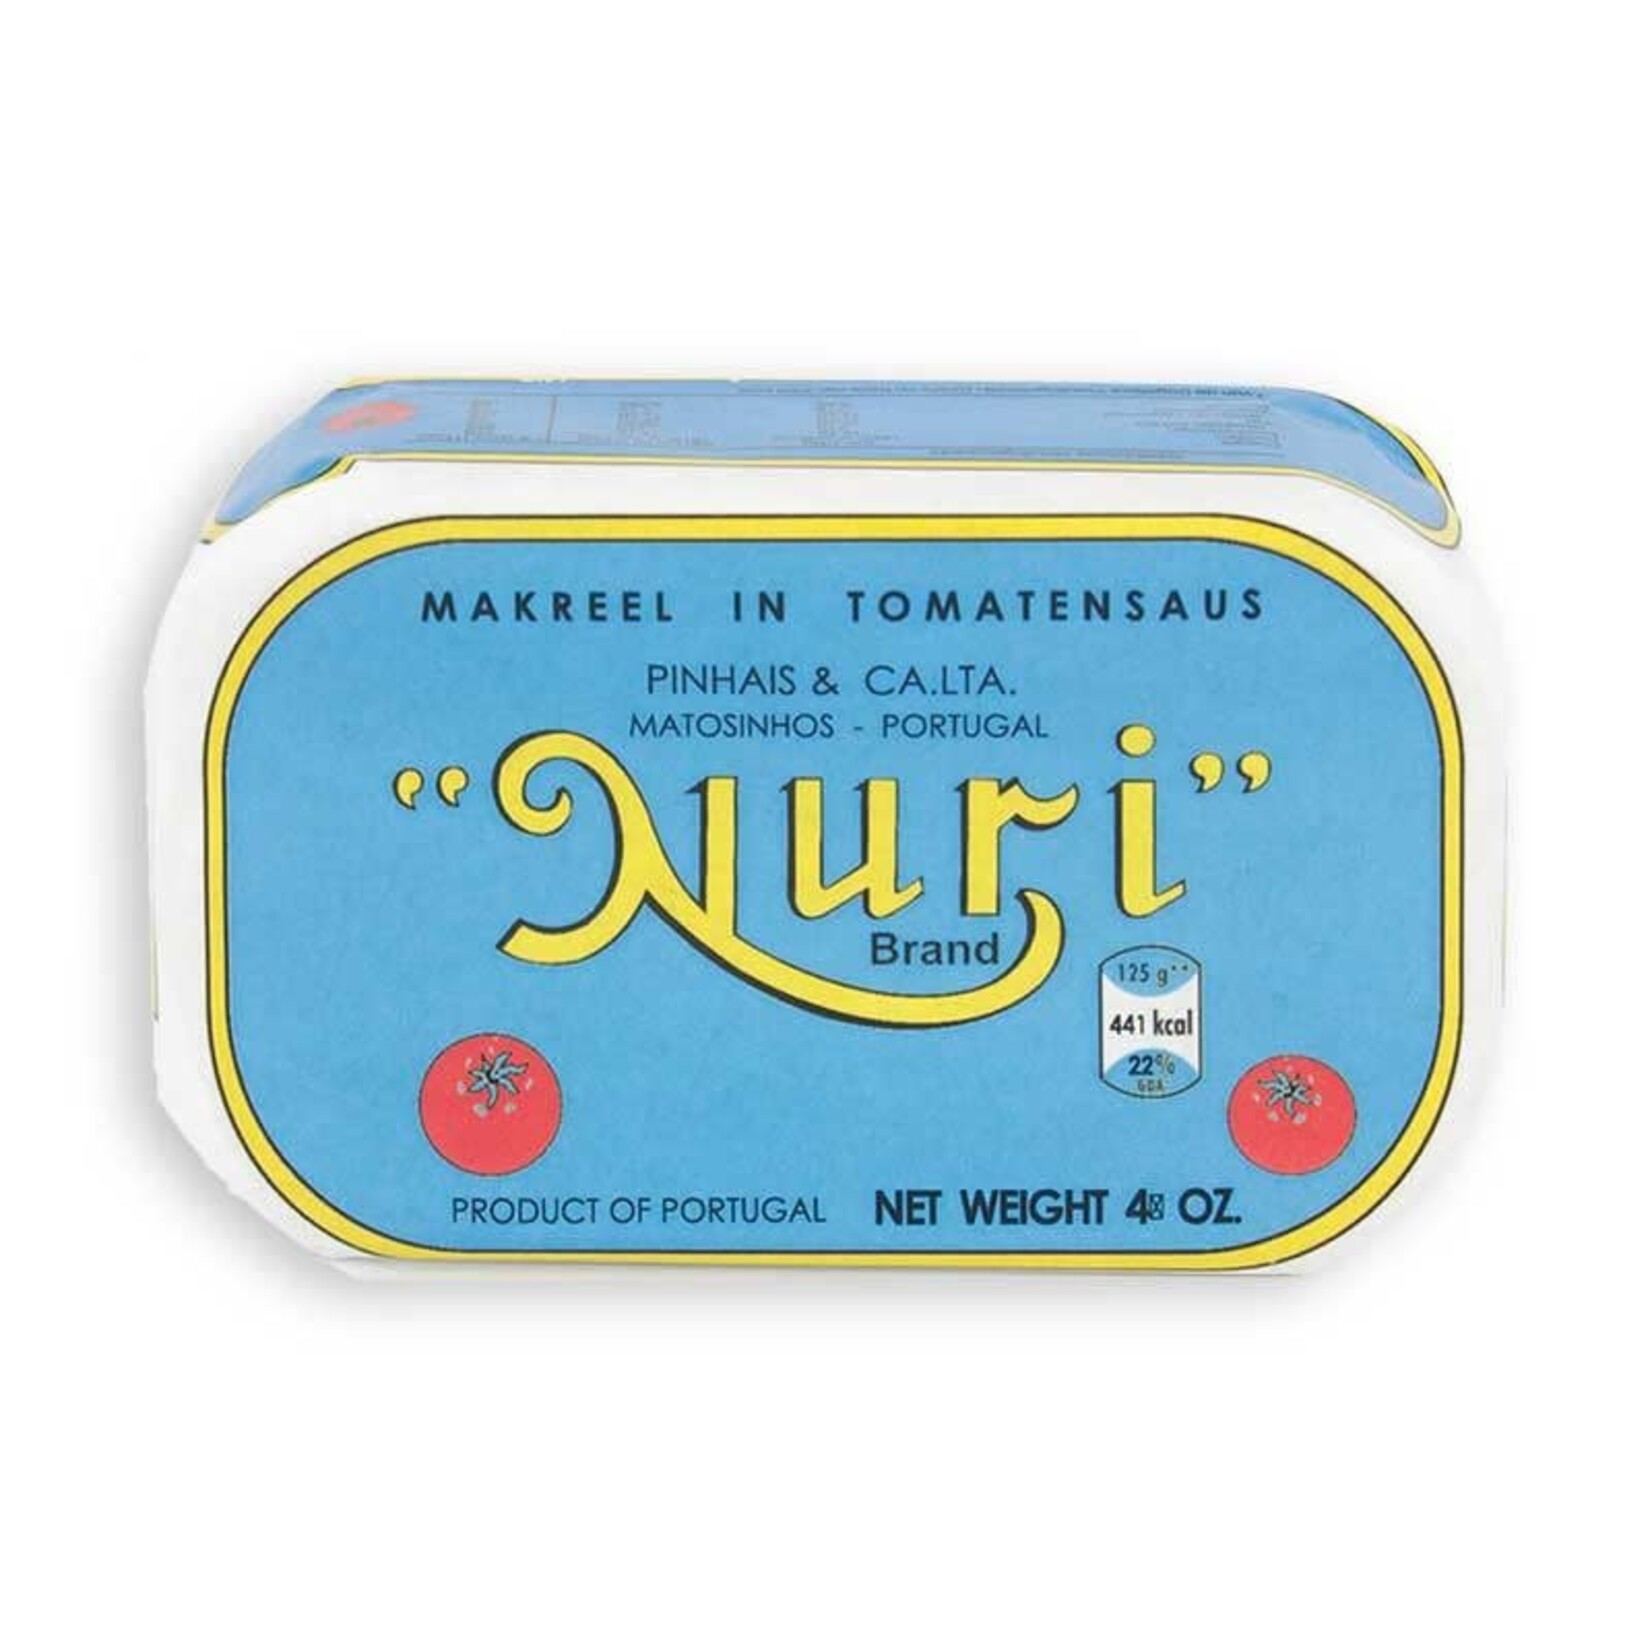 Nuri nuri - Makreel  tomatensaus